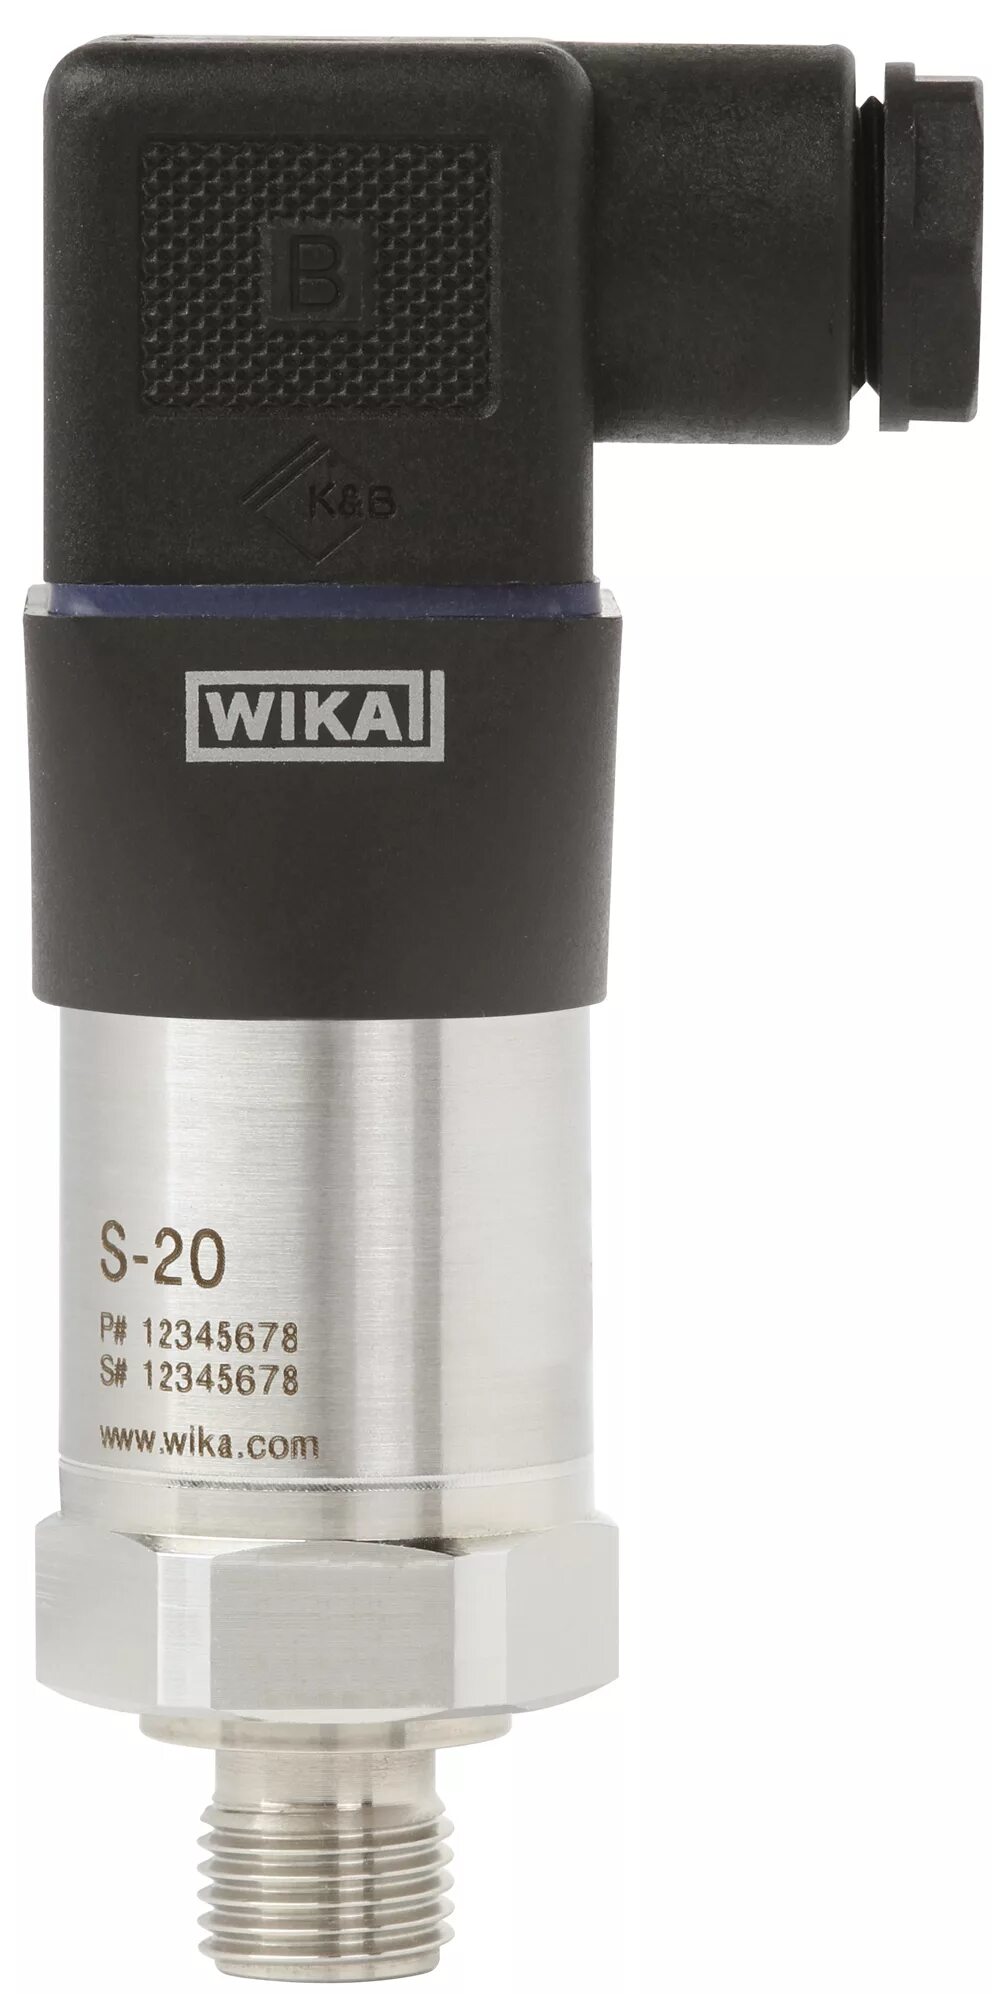 Wika датчик давления 4-20ма. Преобразователь давления wika s-13 -1-9bar. Wika Transmitter is-20-s. Датчик давления wika s-10. Преобразователь давления 0 0 25